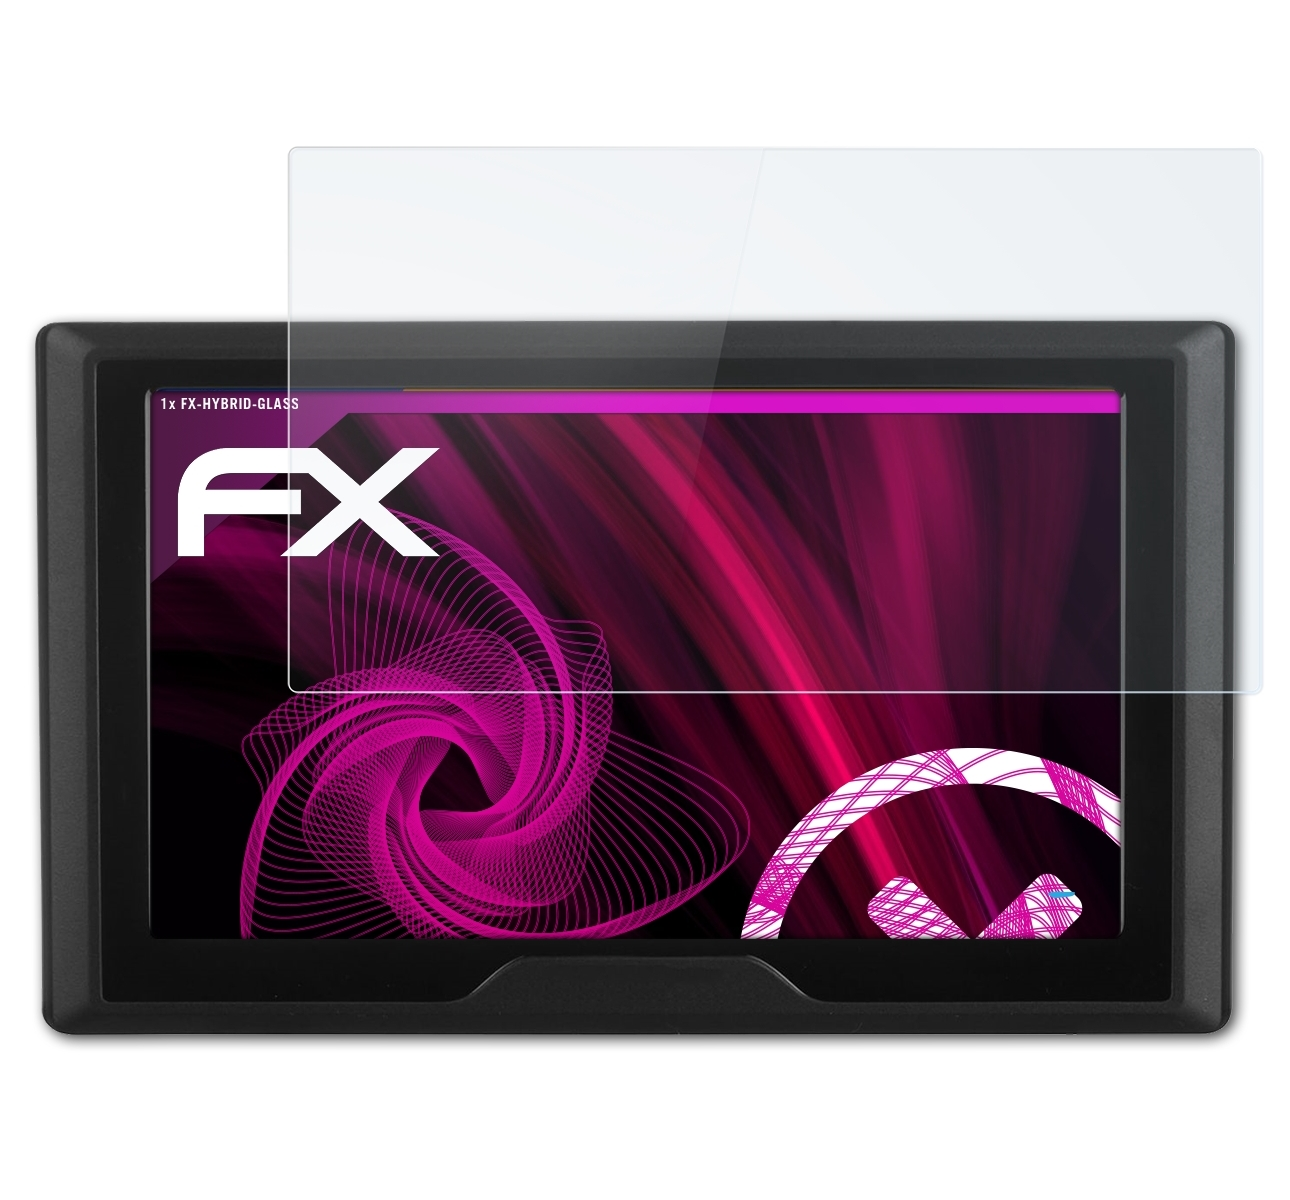 ATFOLIX FX-Hybrid-Glass Garmin CE) Schutzglas(für 5S Drive